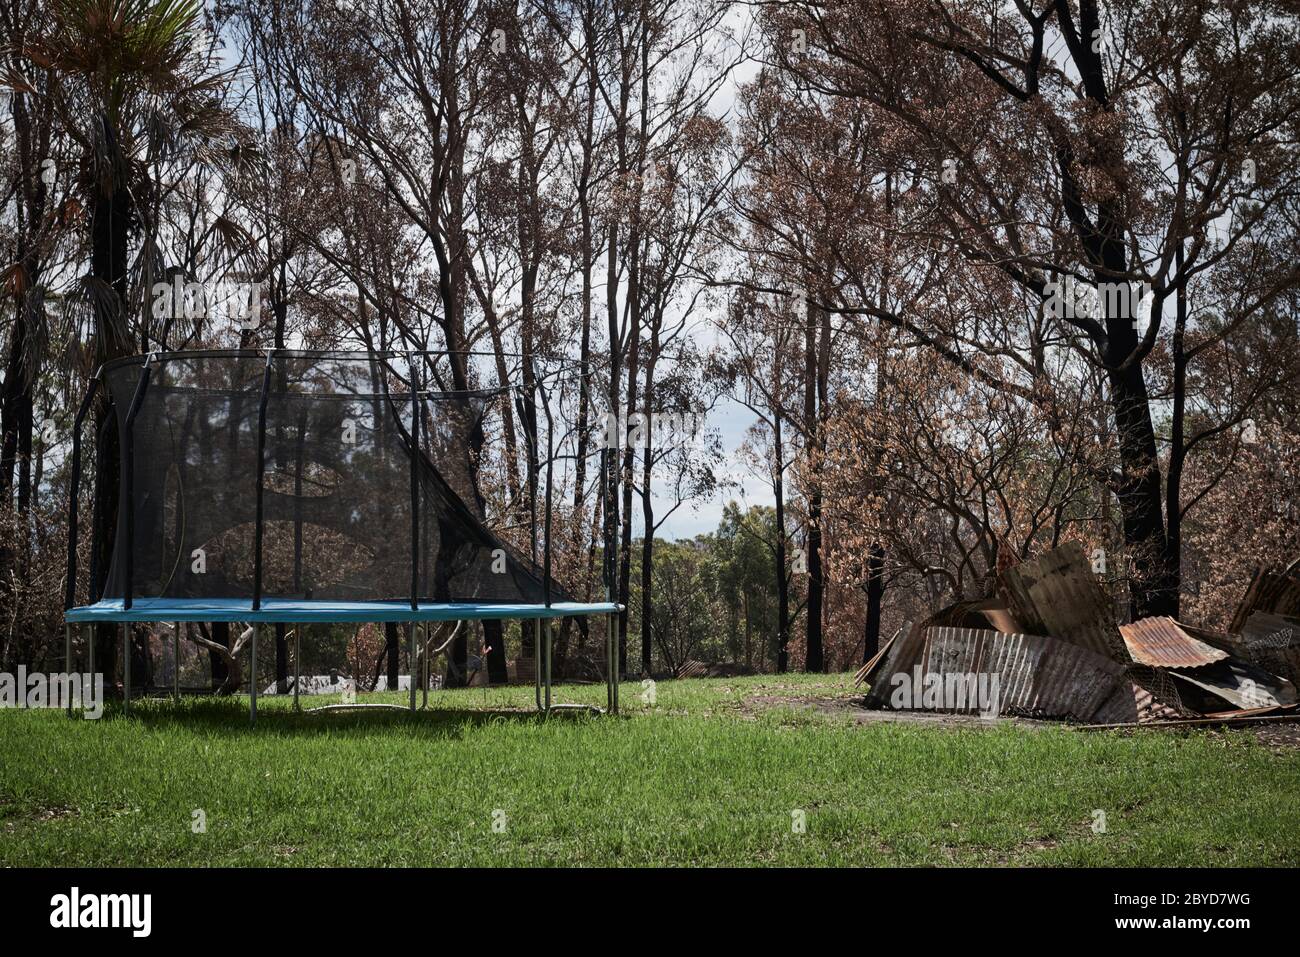 Les restes d'un trampoline sur une propriété détruite par les feux de brousse à Sarsfield, Victoria Australie Banque D'Images